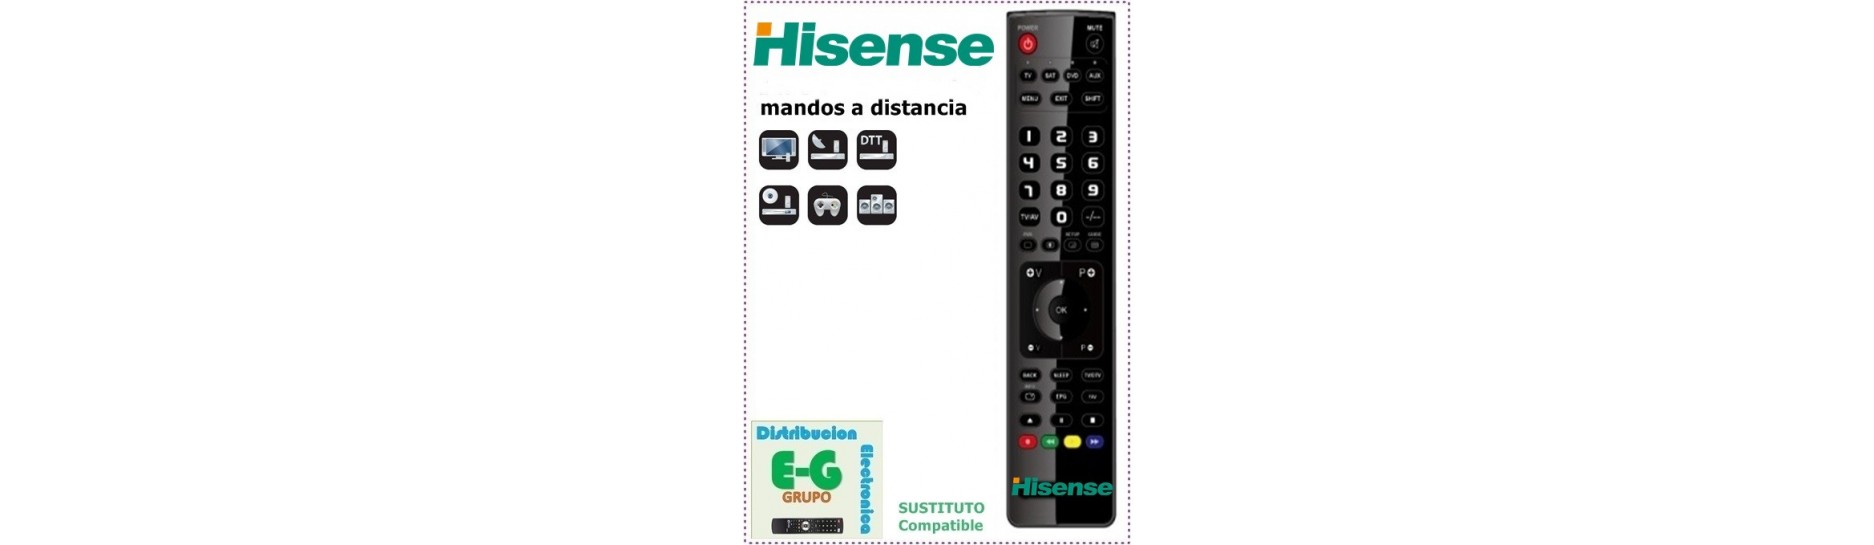 HISENSE Mandos para DVD e HIFI | Comprar Mando HISENSE para DVD e HIFI